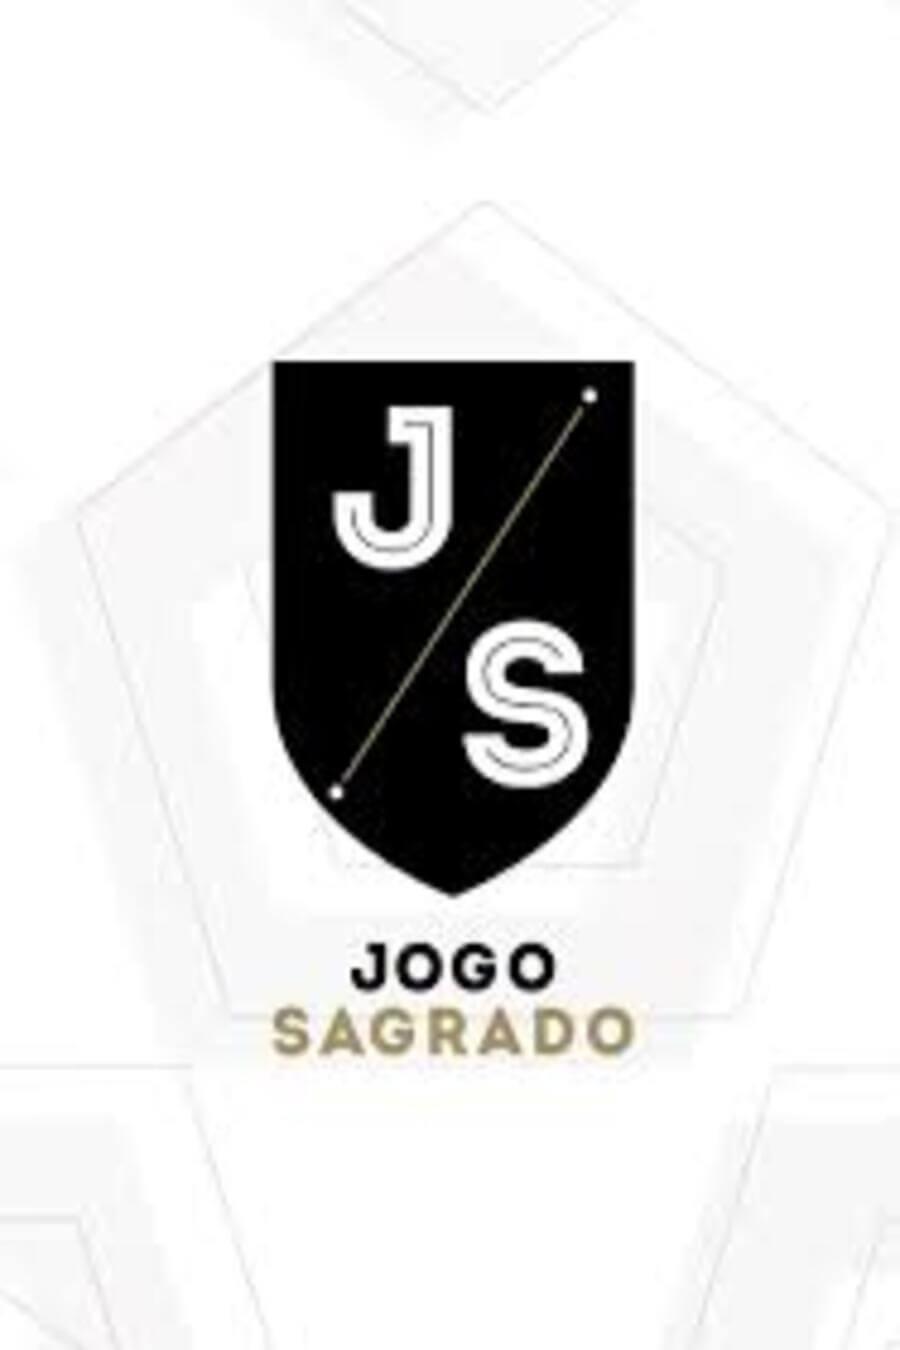 TV ratings for Jogo Sagrado in Russia. Fox Sports Brasil TV series